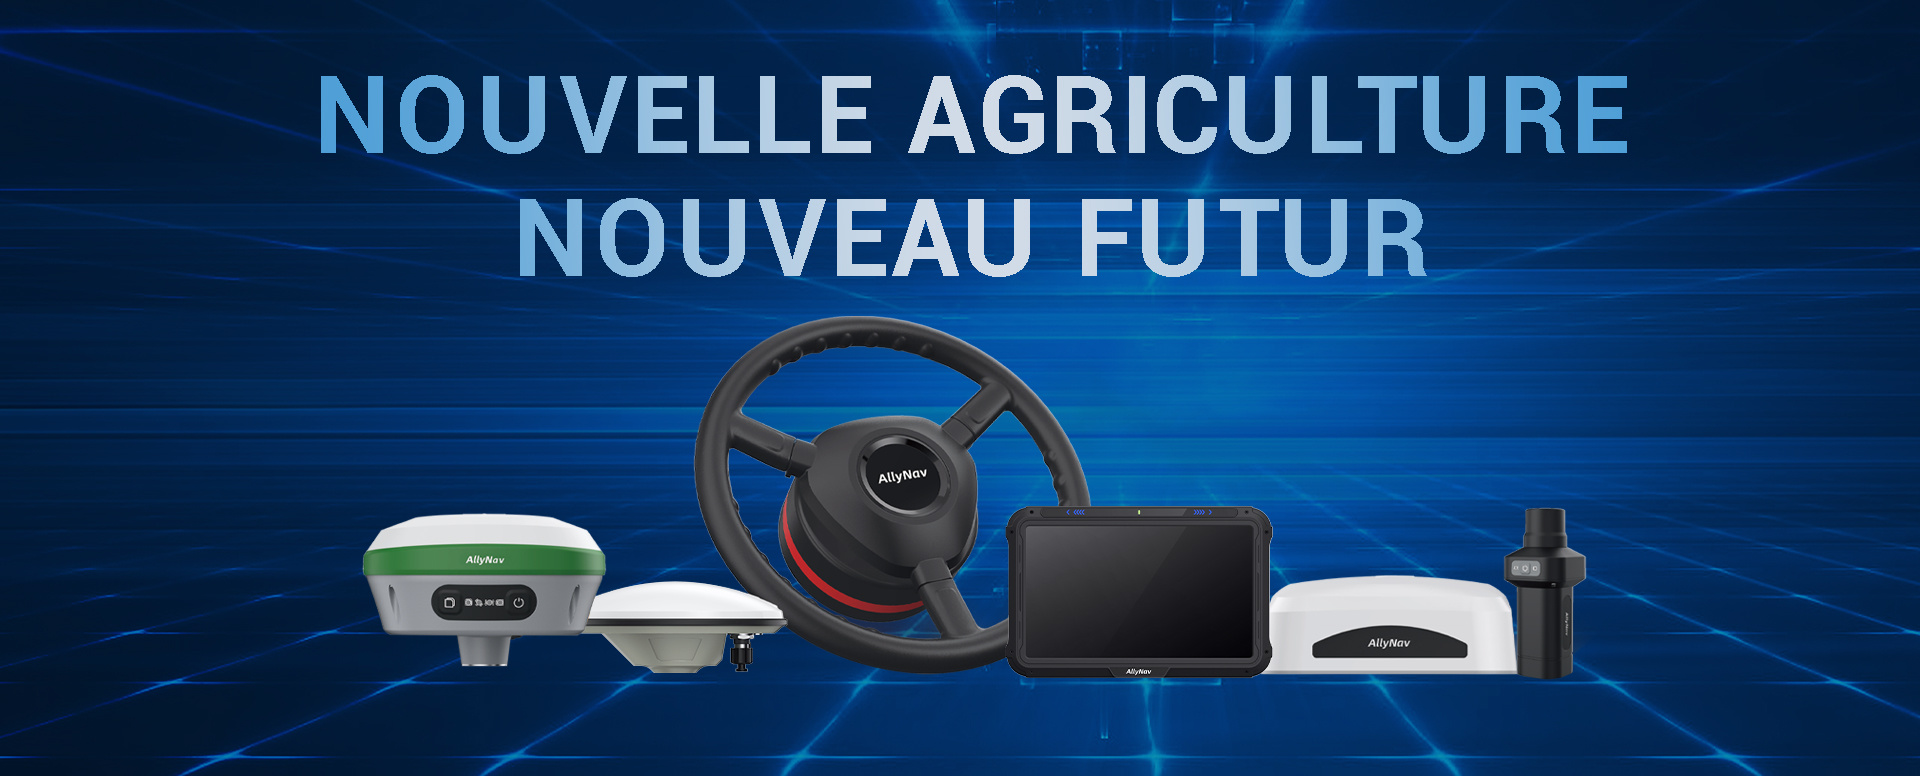 Nouvelle agriculture - Nouveau futur